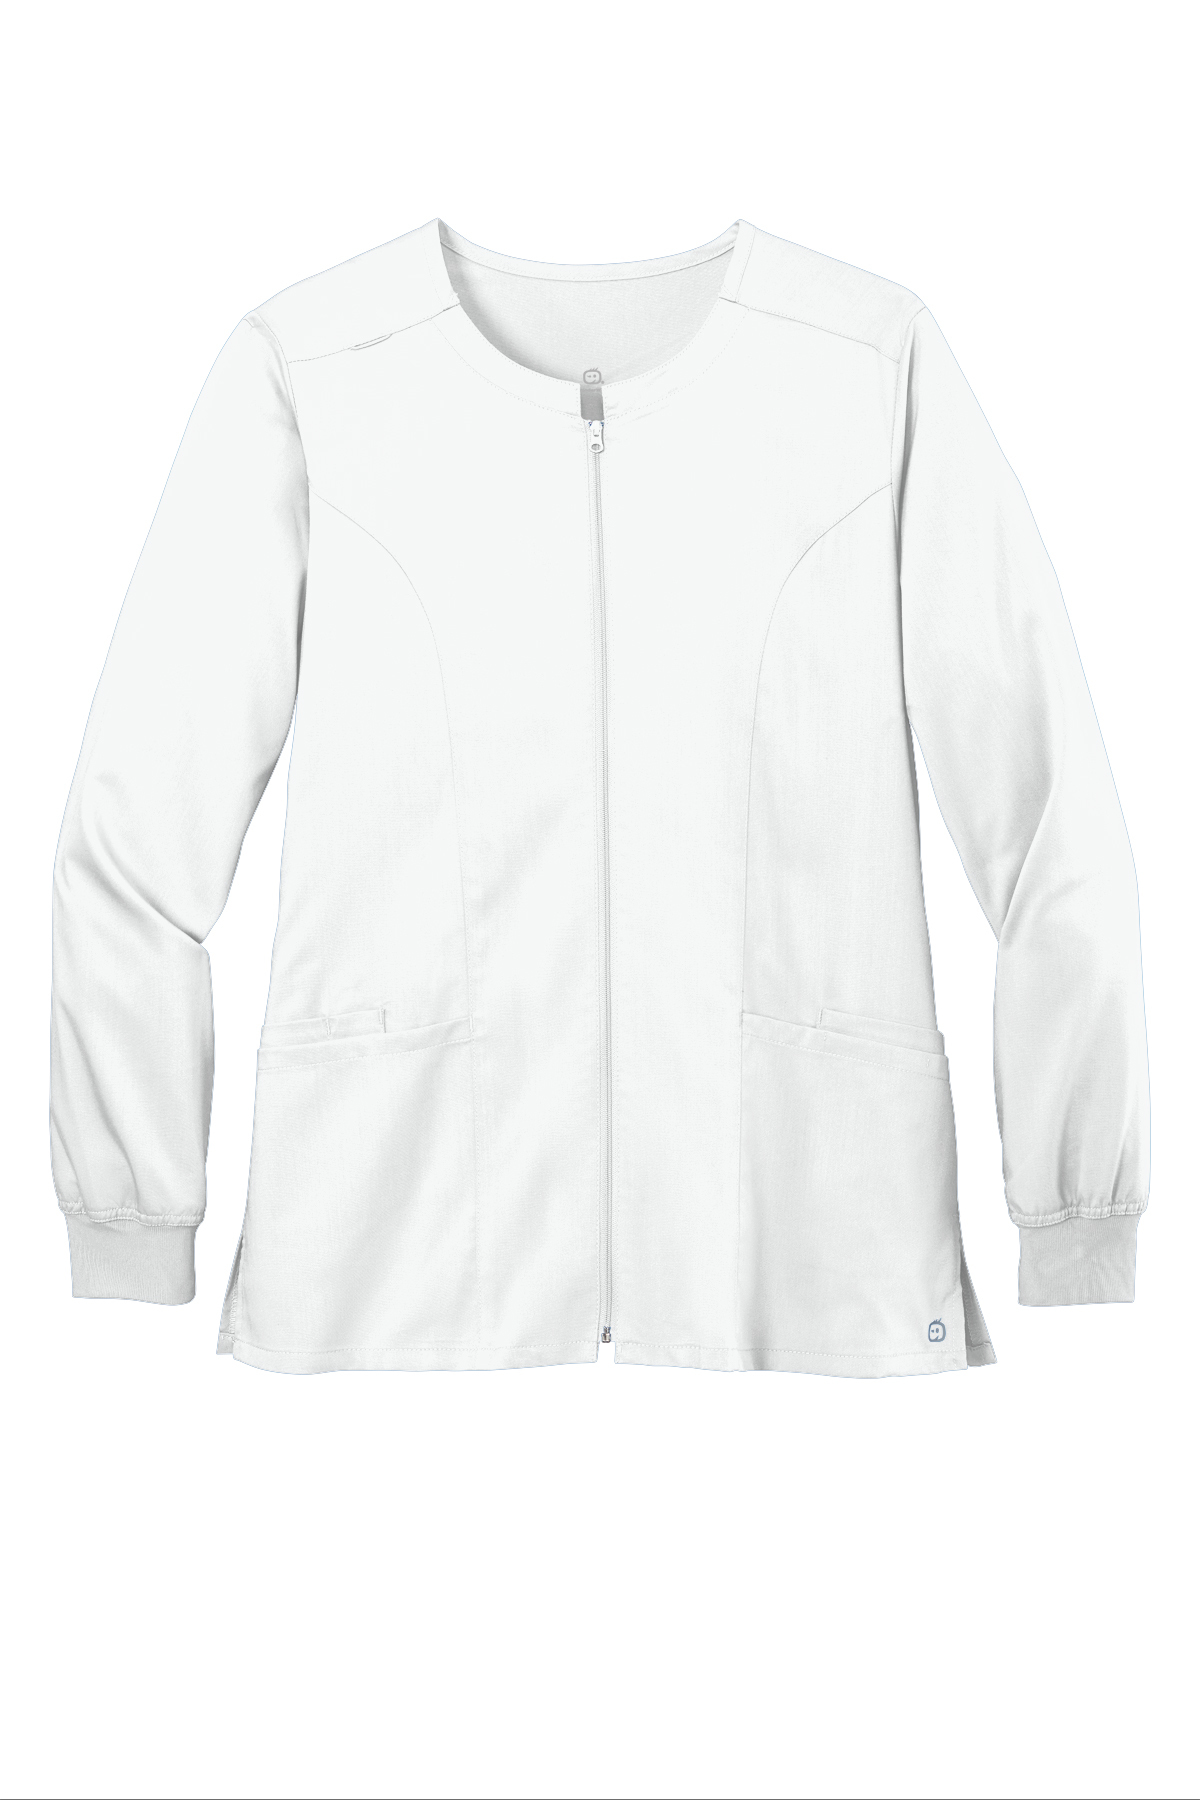 Wink Women's Premiere Flex Full-Zip Scrub Jacket, Product